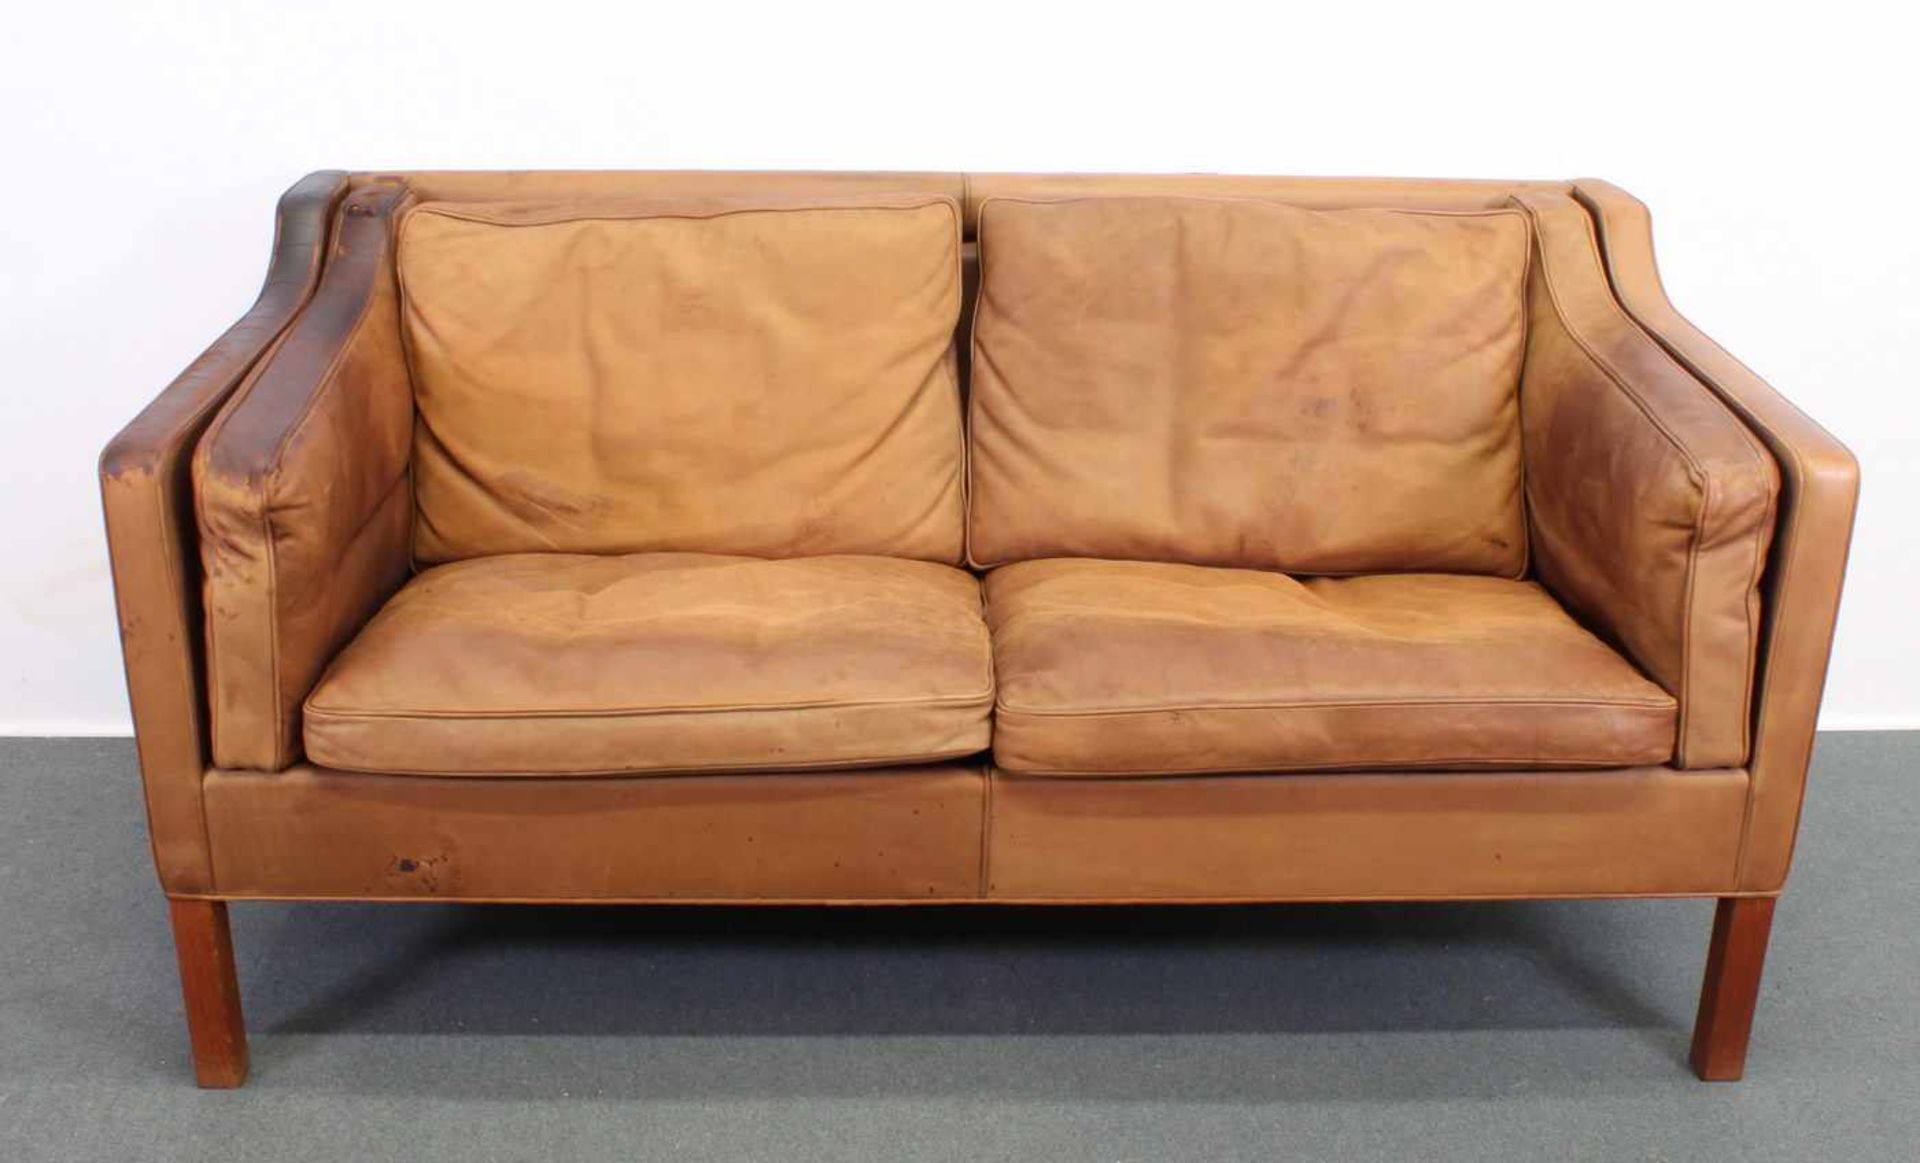 Zweisitzer-Sofa, Design Børge Mogensen (1914-1972), Dänemark, 2. Hälfte 20. Jh., Herstellung - Image 2 of 8